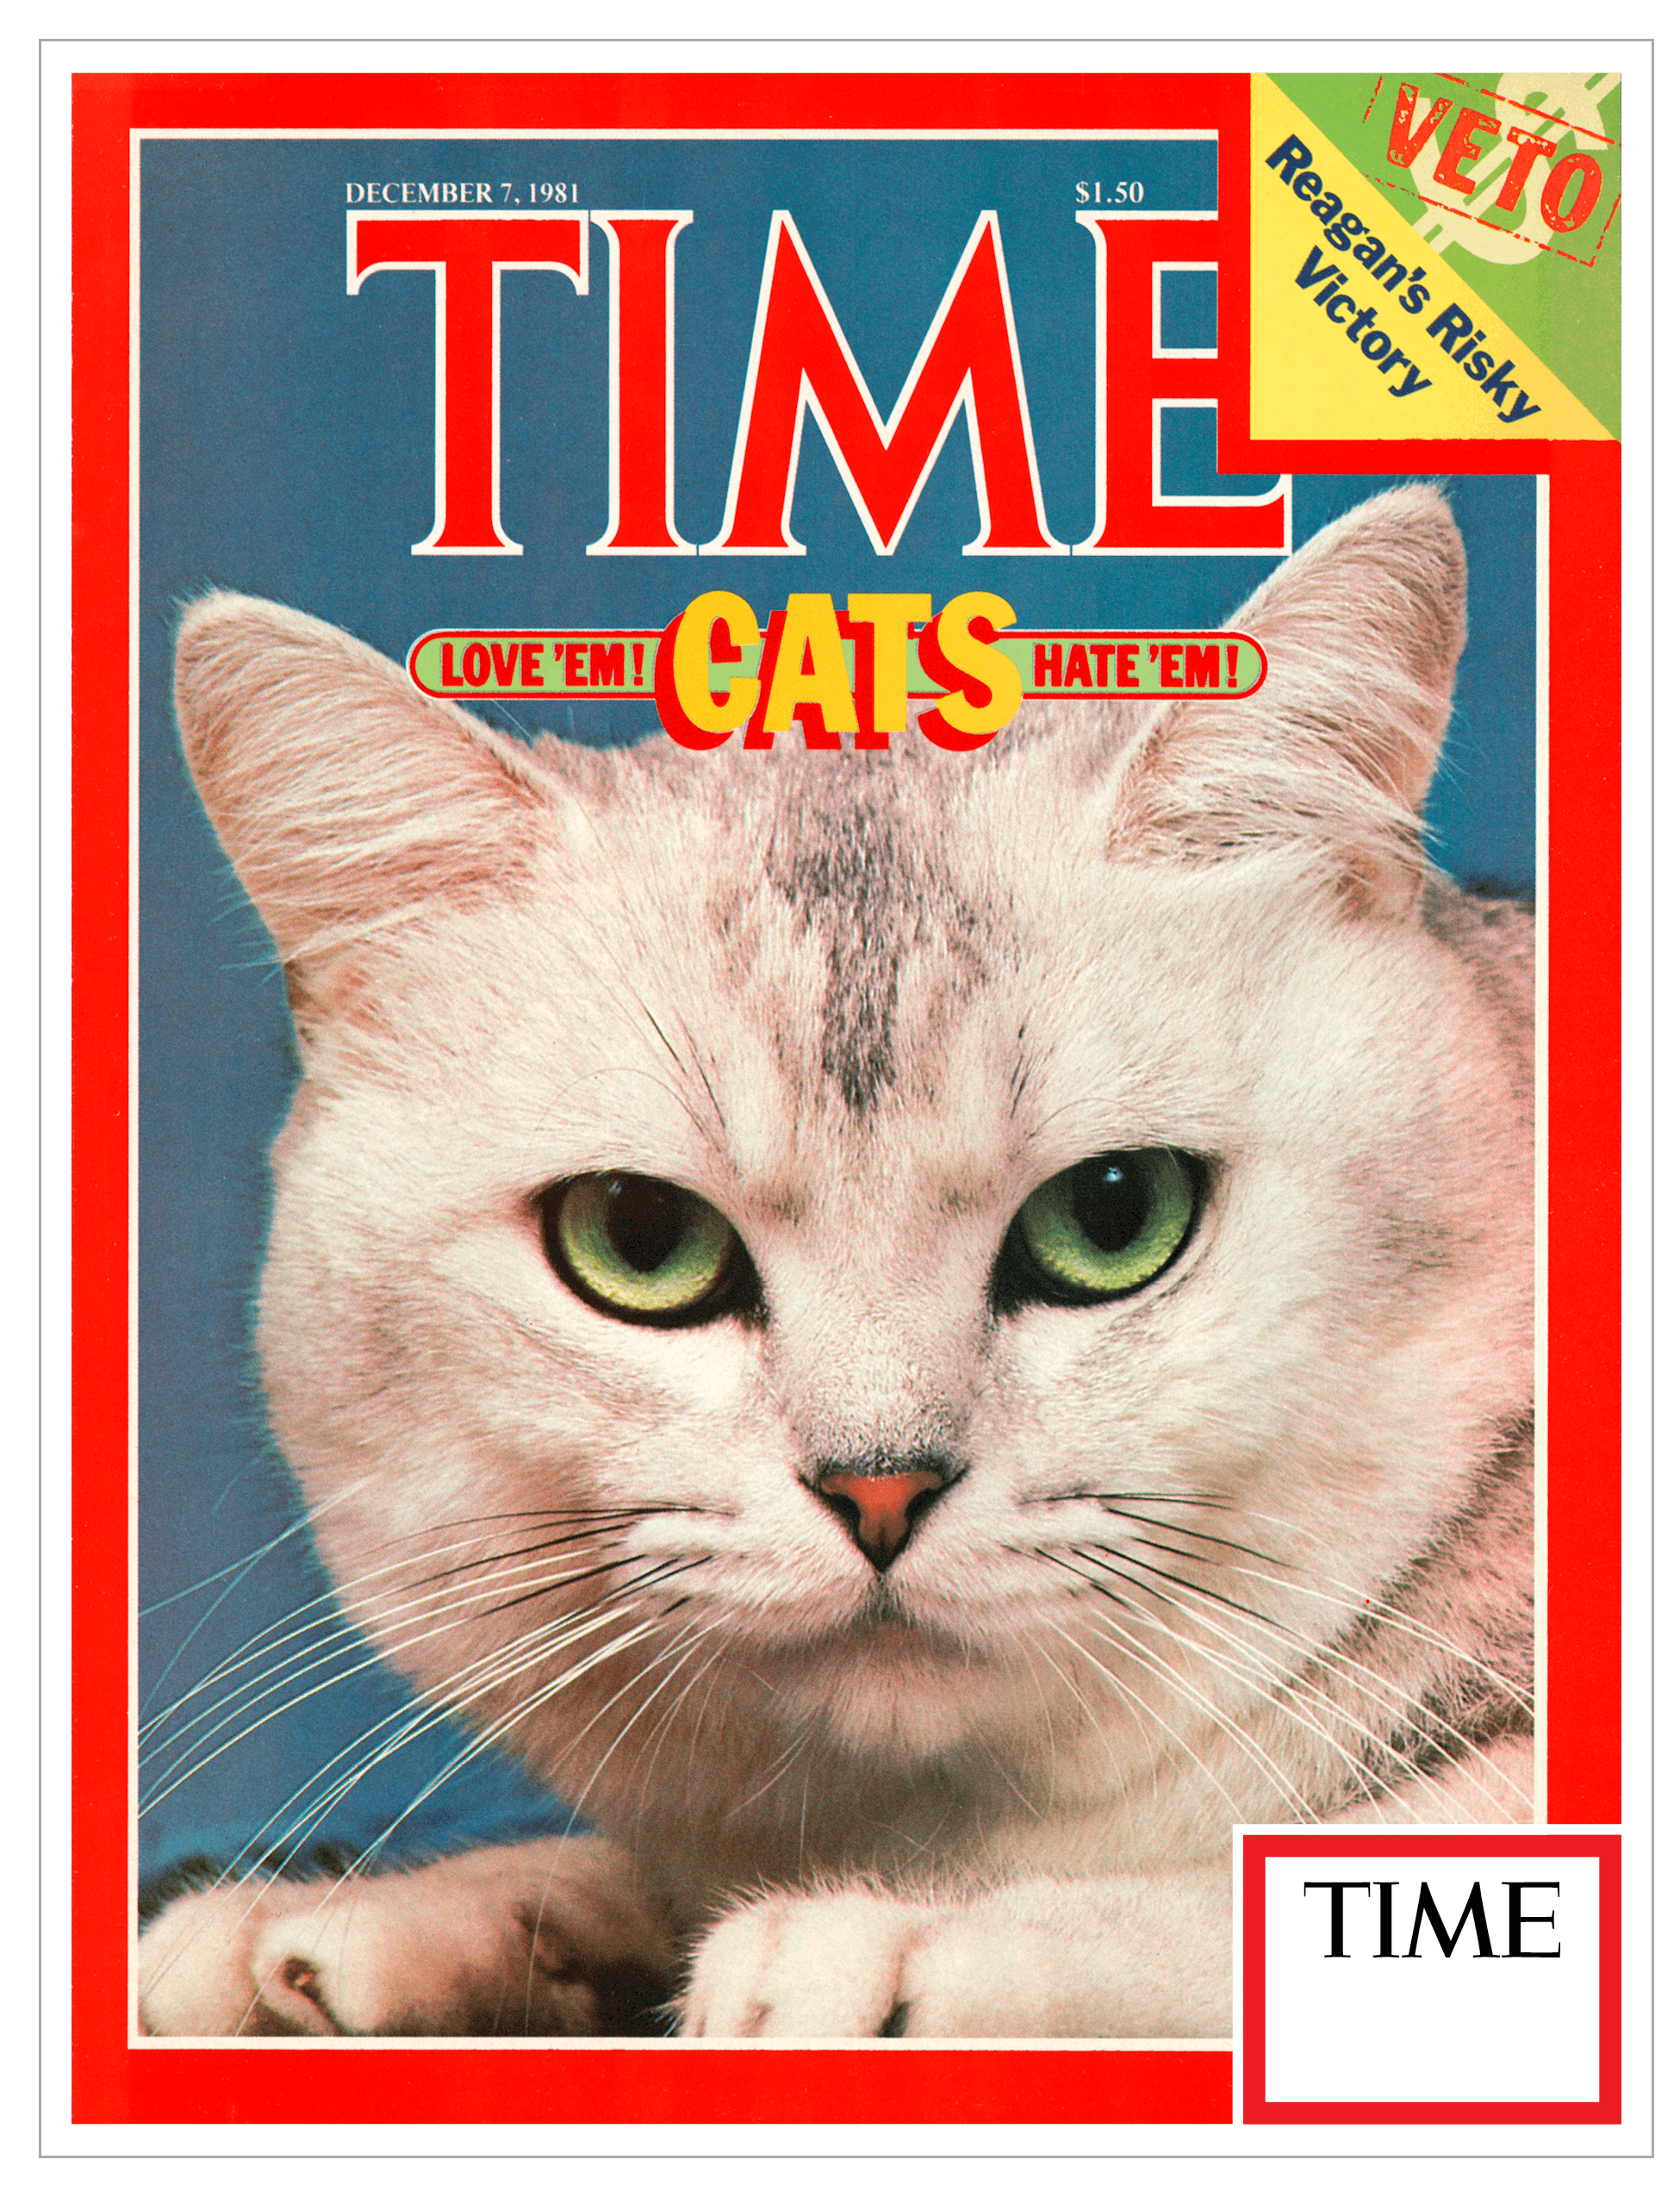 TIME Cats Love 'em! Hate 'em! - December 7th, 1981